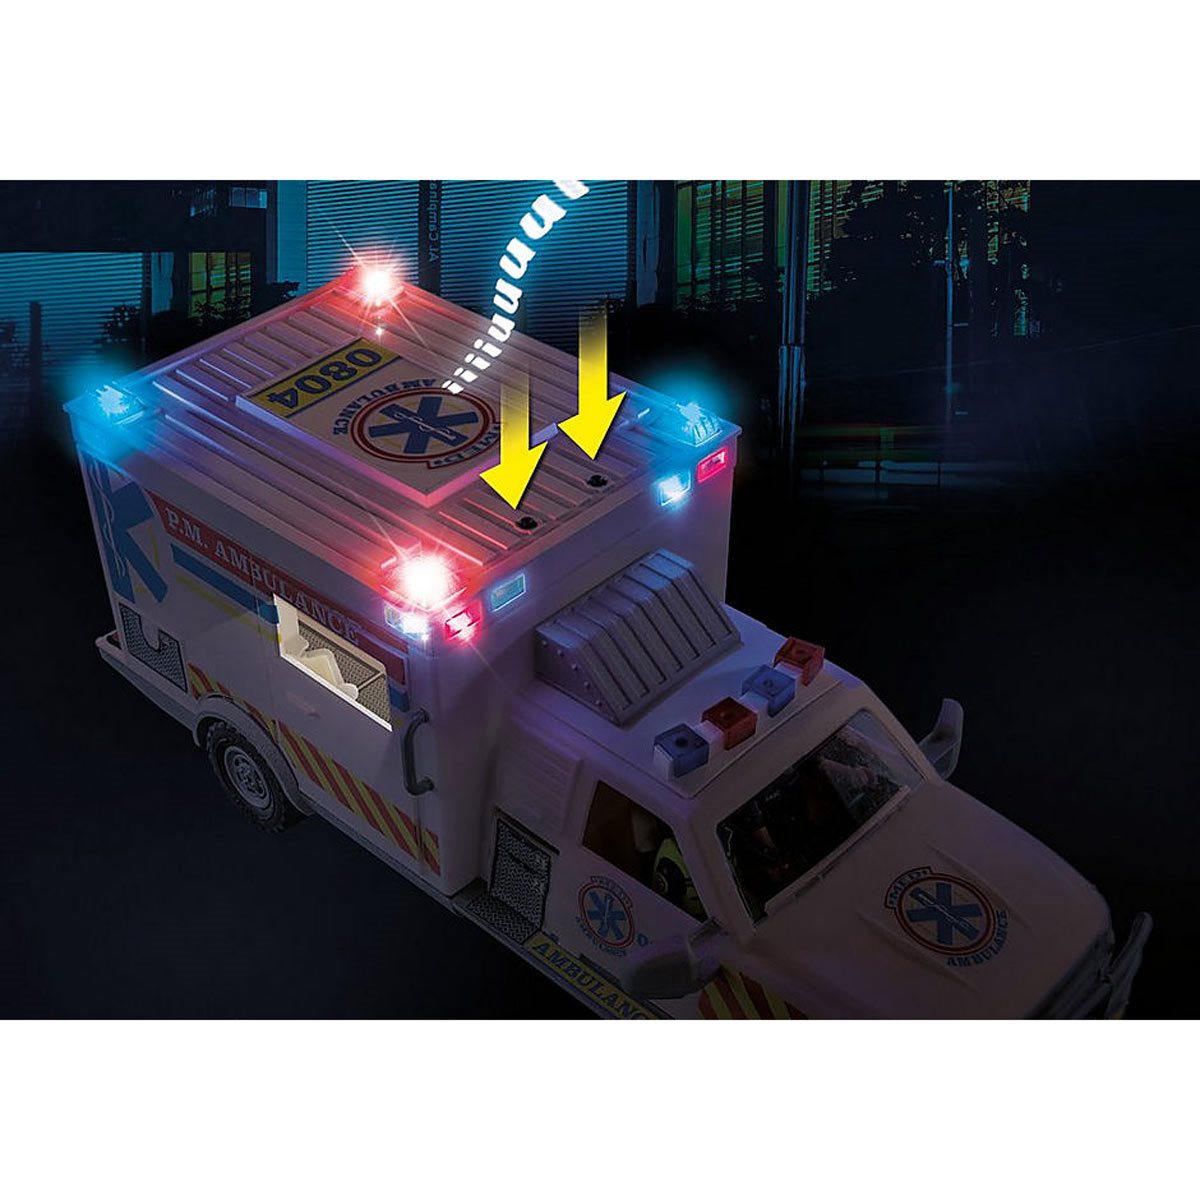 Playmobil - 70936 - city action les secouristes - ambulance avec secouristes  et blessé PL70936 - Conforama